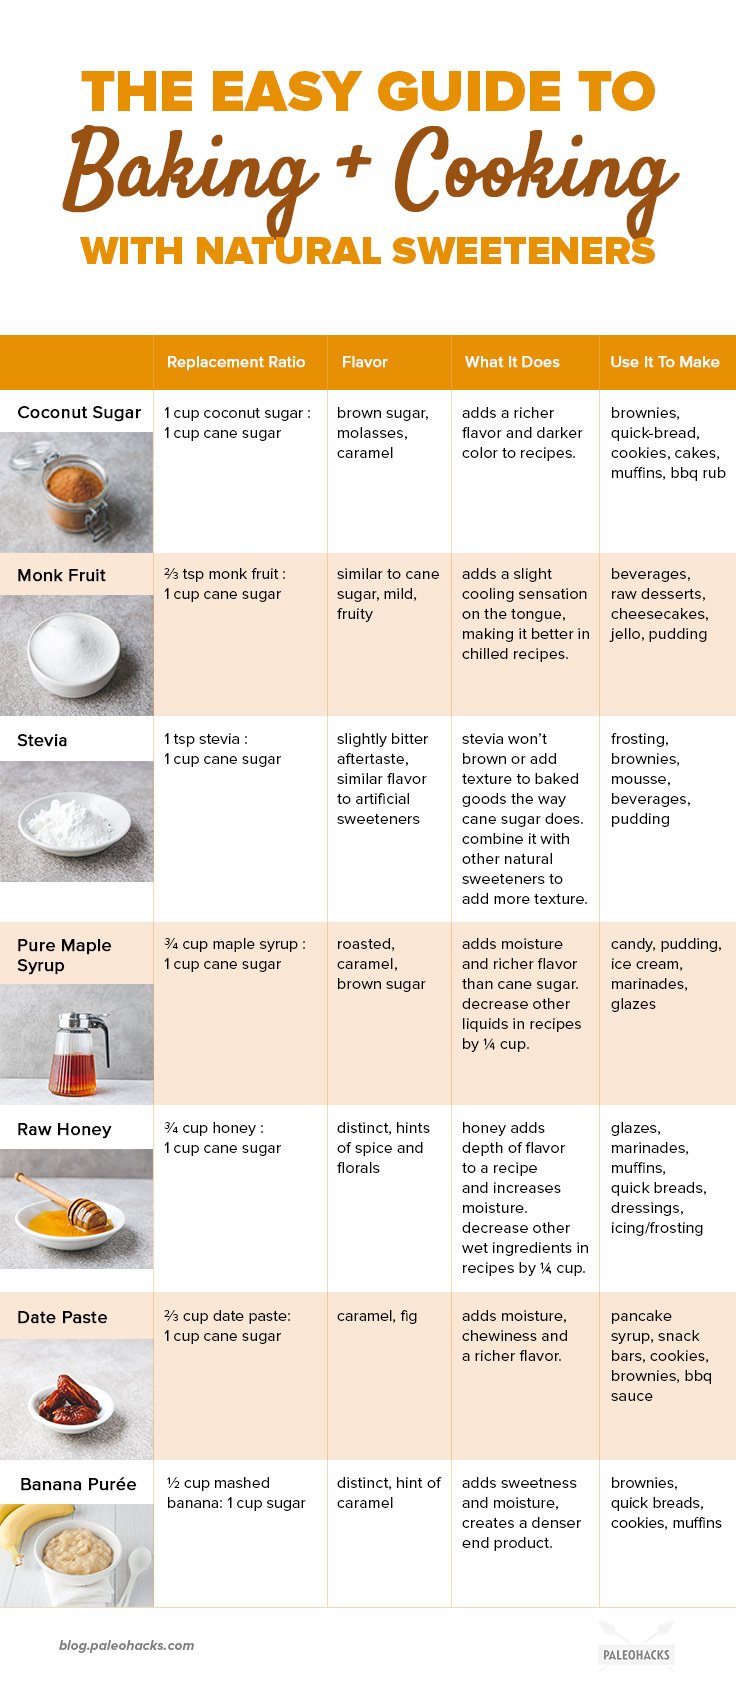 ¡No sacrifiques tus dulces y postres favoritos! Utilice esta Guía de Edulcorantes Paleo para satisfacer todas sus indulgencias, sin el desplome de azúcar.